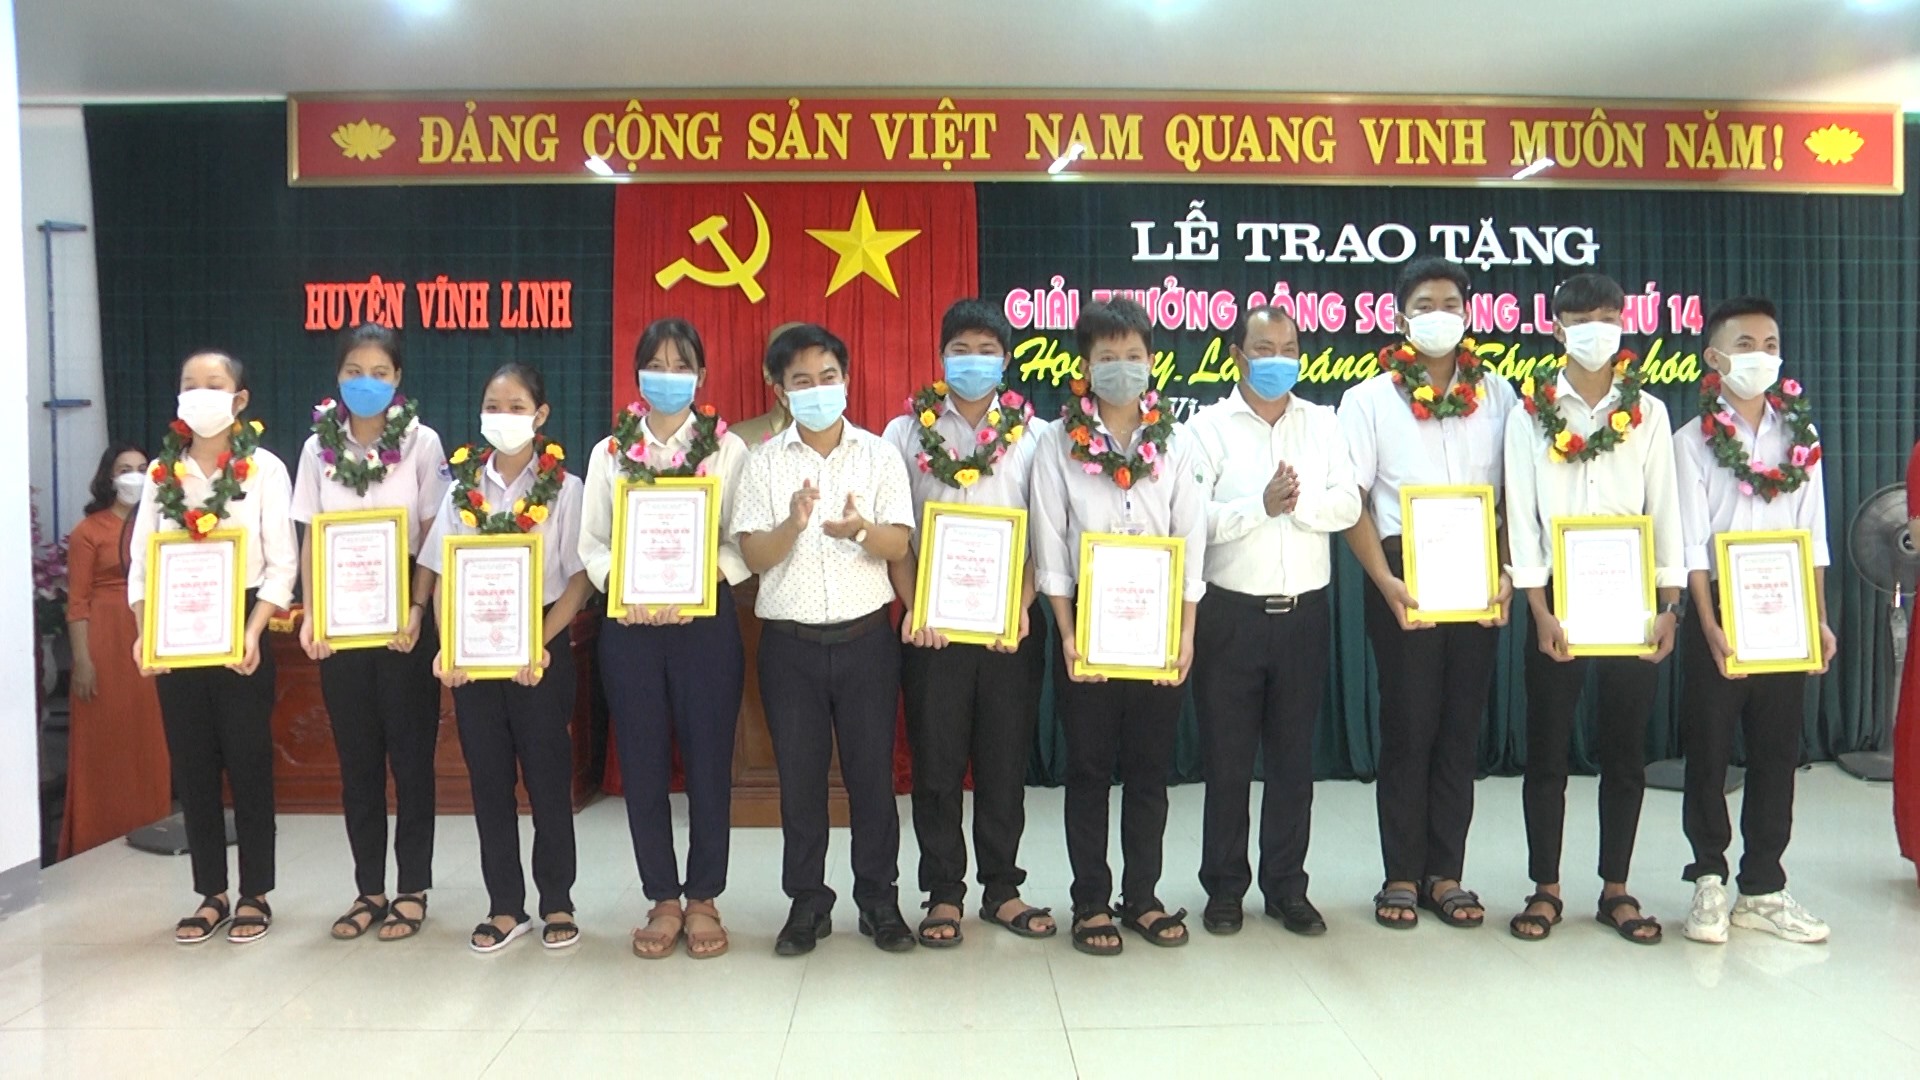 Huyện Vĩnh Linh trao tặng giải thưởng “Bông Sen Hồng” cho 42 cá nhân xuất sắc